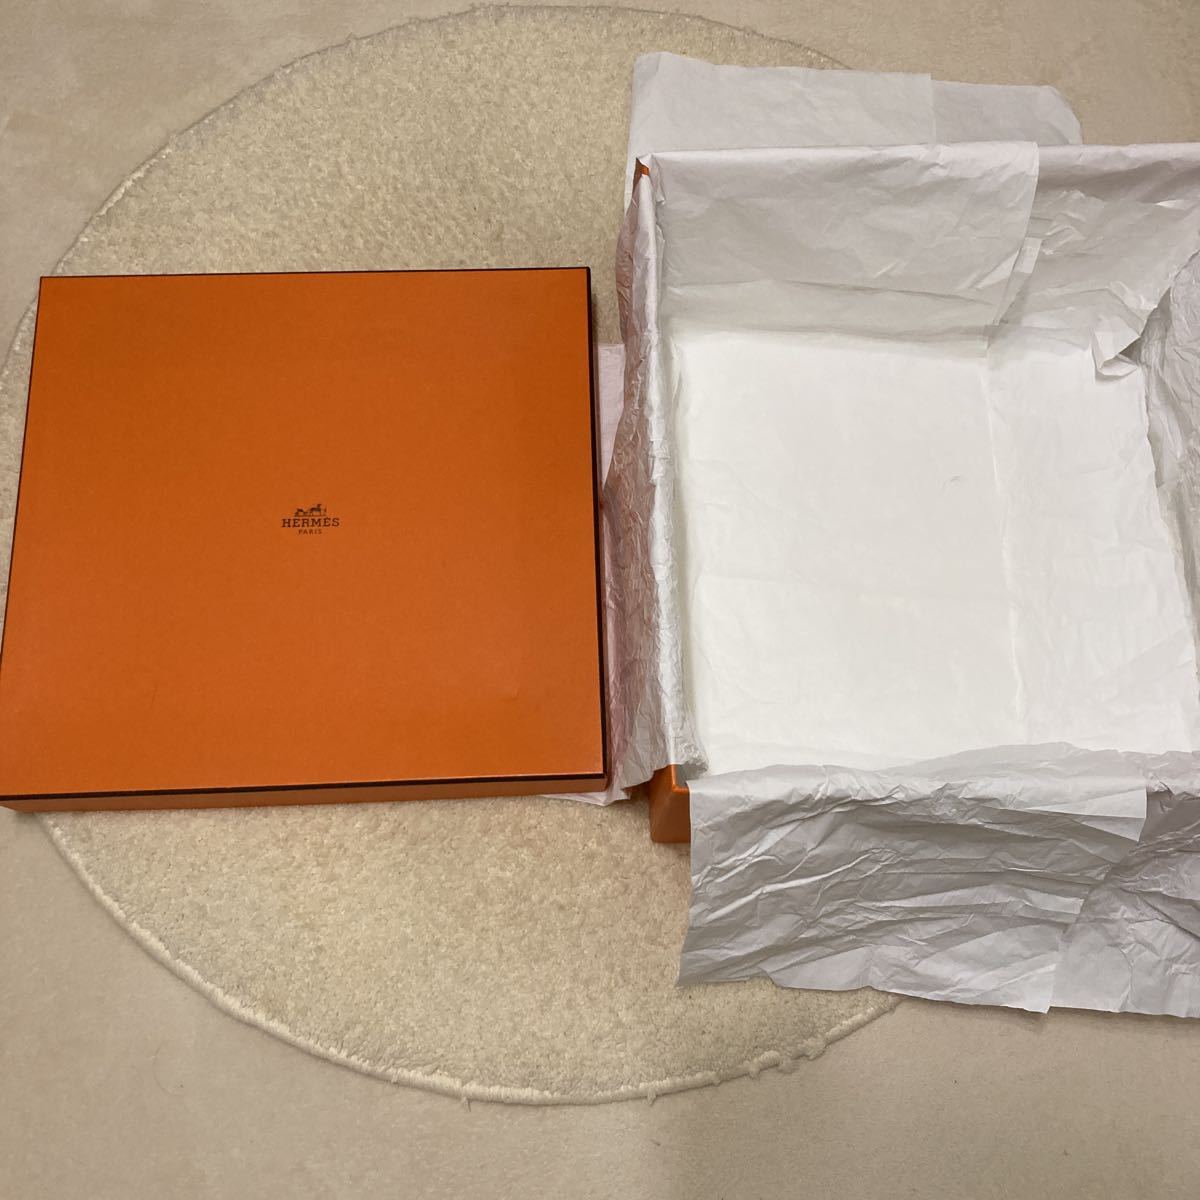 エルメス バーキン35 空箱 41.5×39.5×22 ボックス 空き箱 箱 化粧箱 